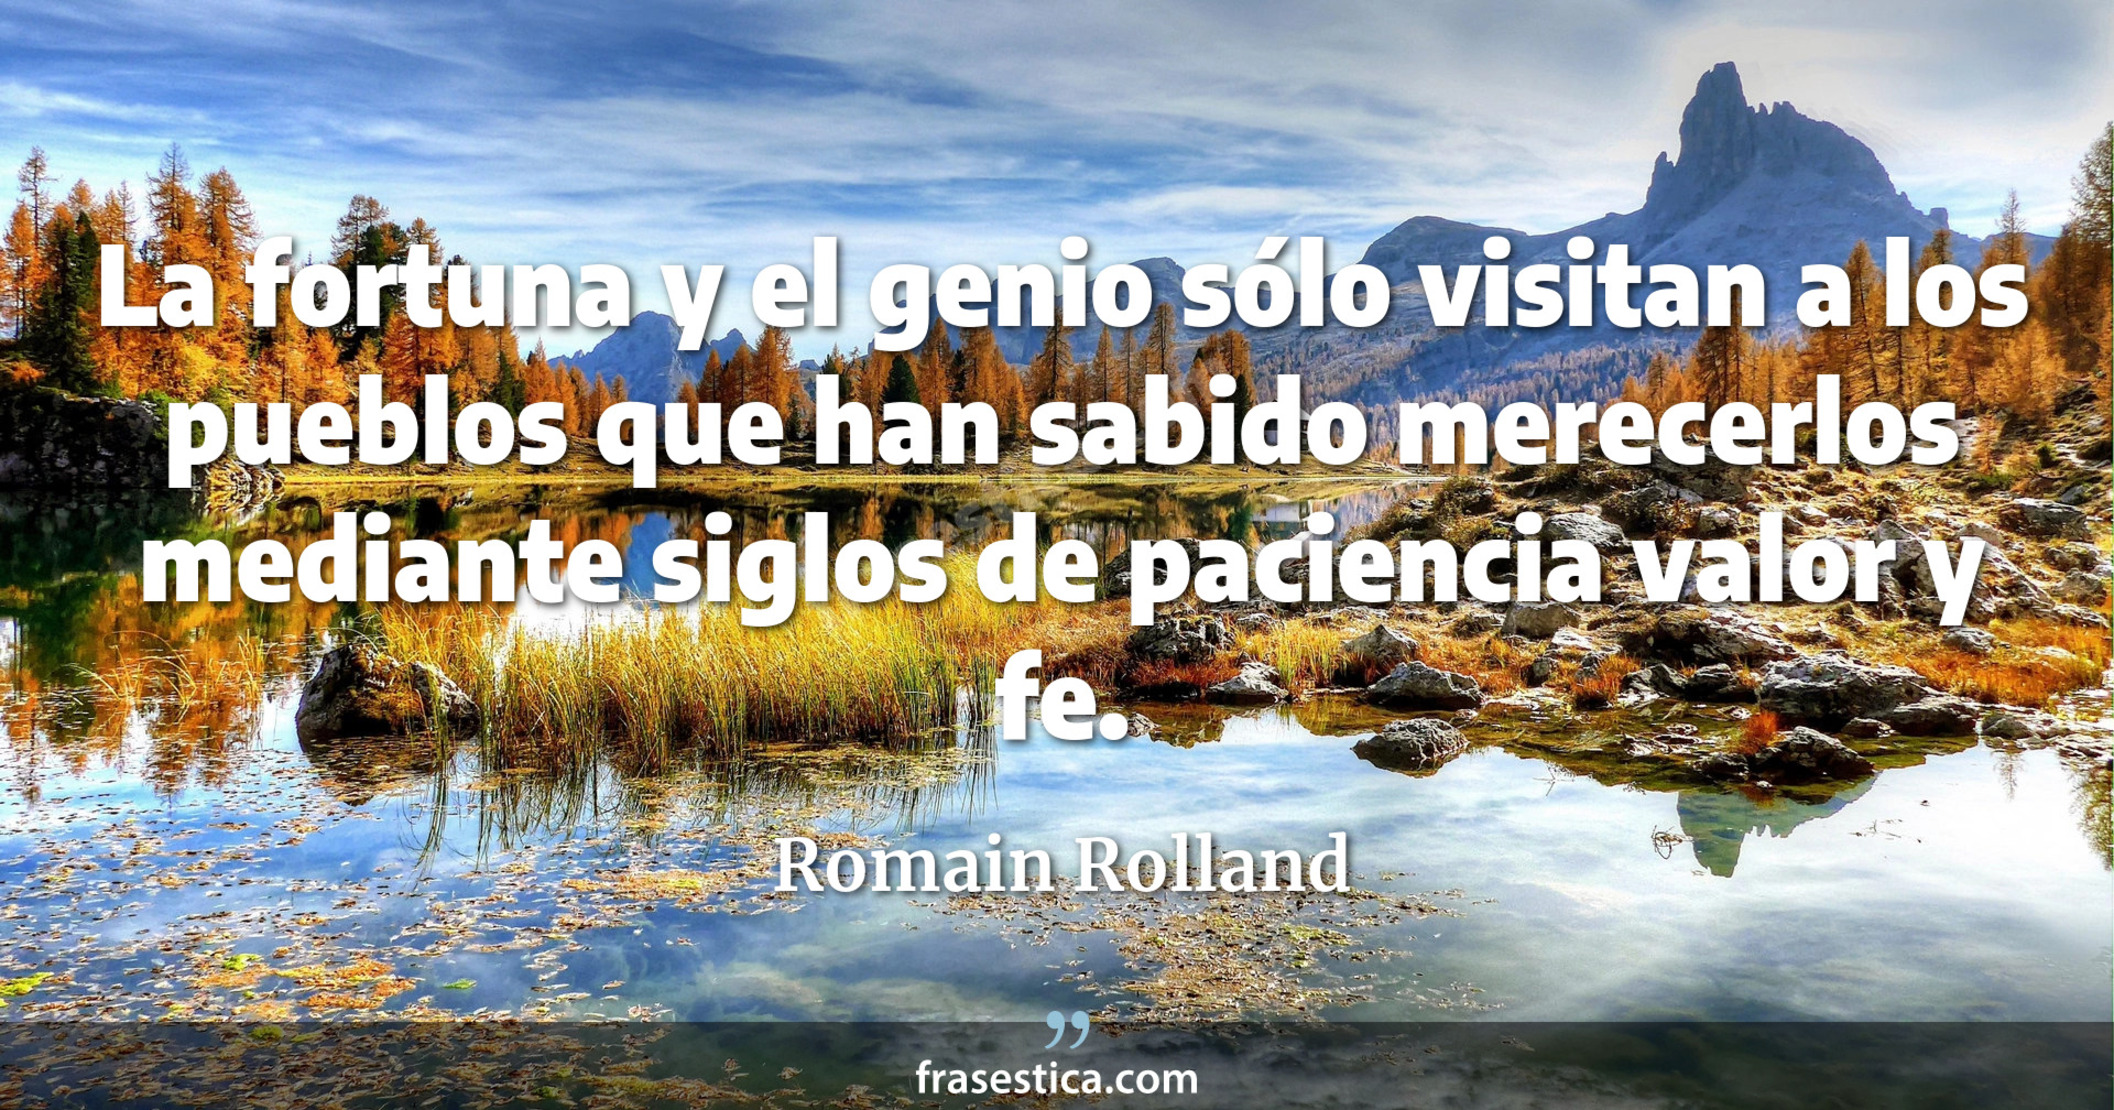 La fortuna y el genio sólo visitan a los pueblos que han sabido merecerlos mediante siglos de paciencia valor y fe. - Romain Rolland